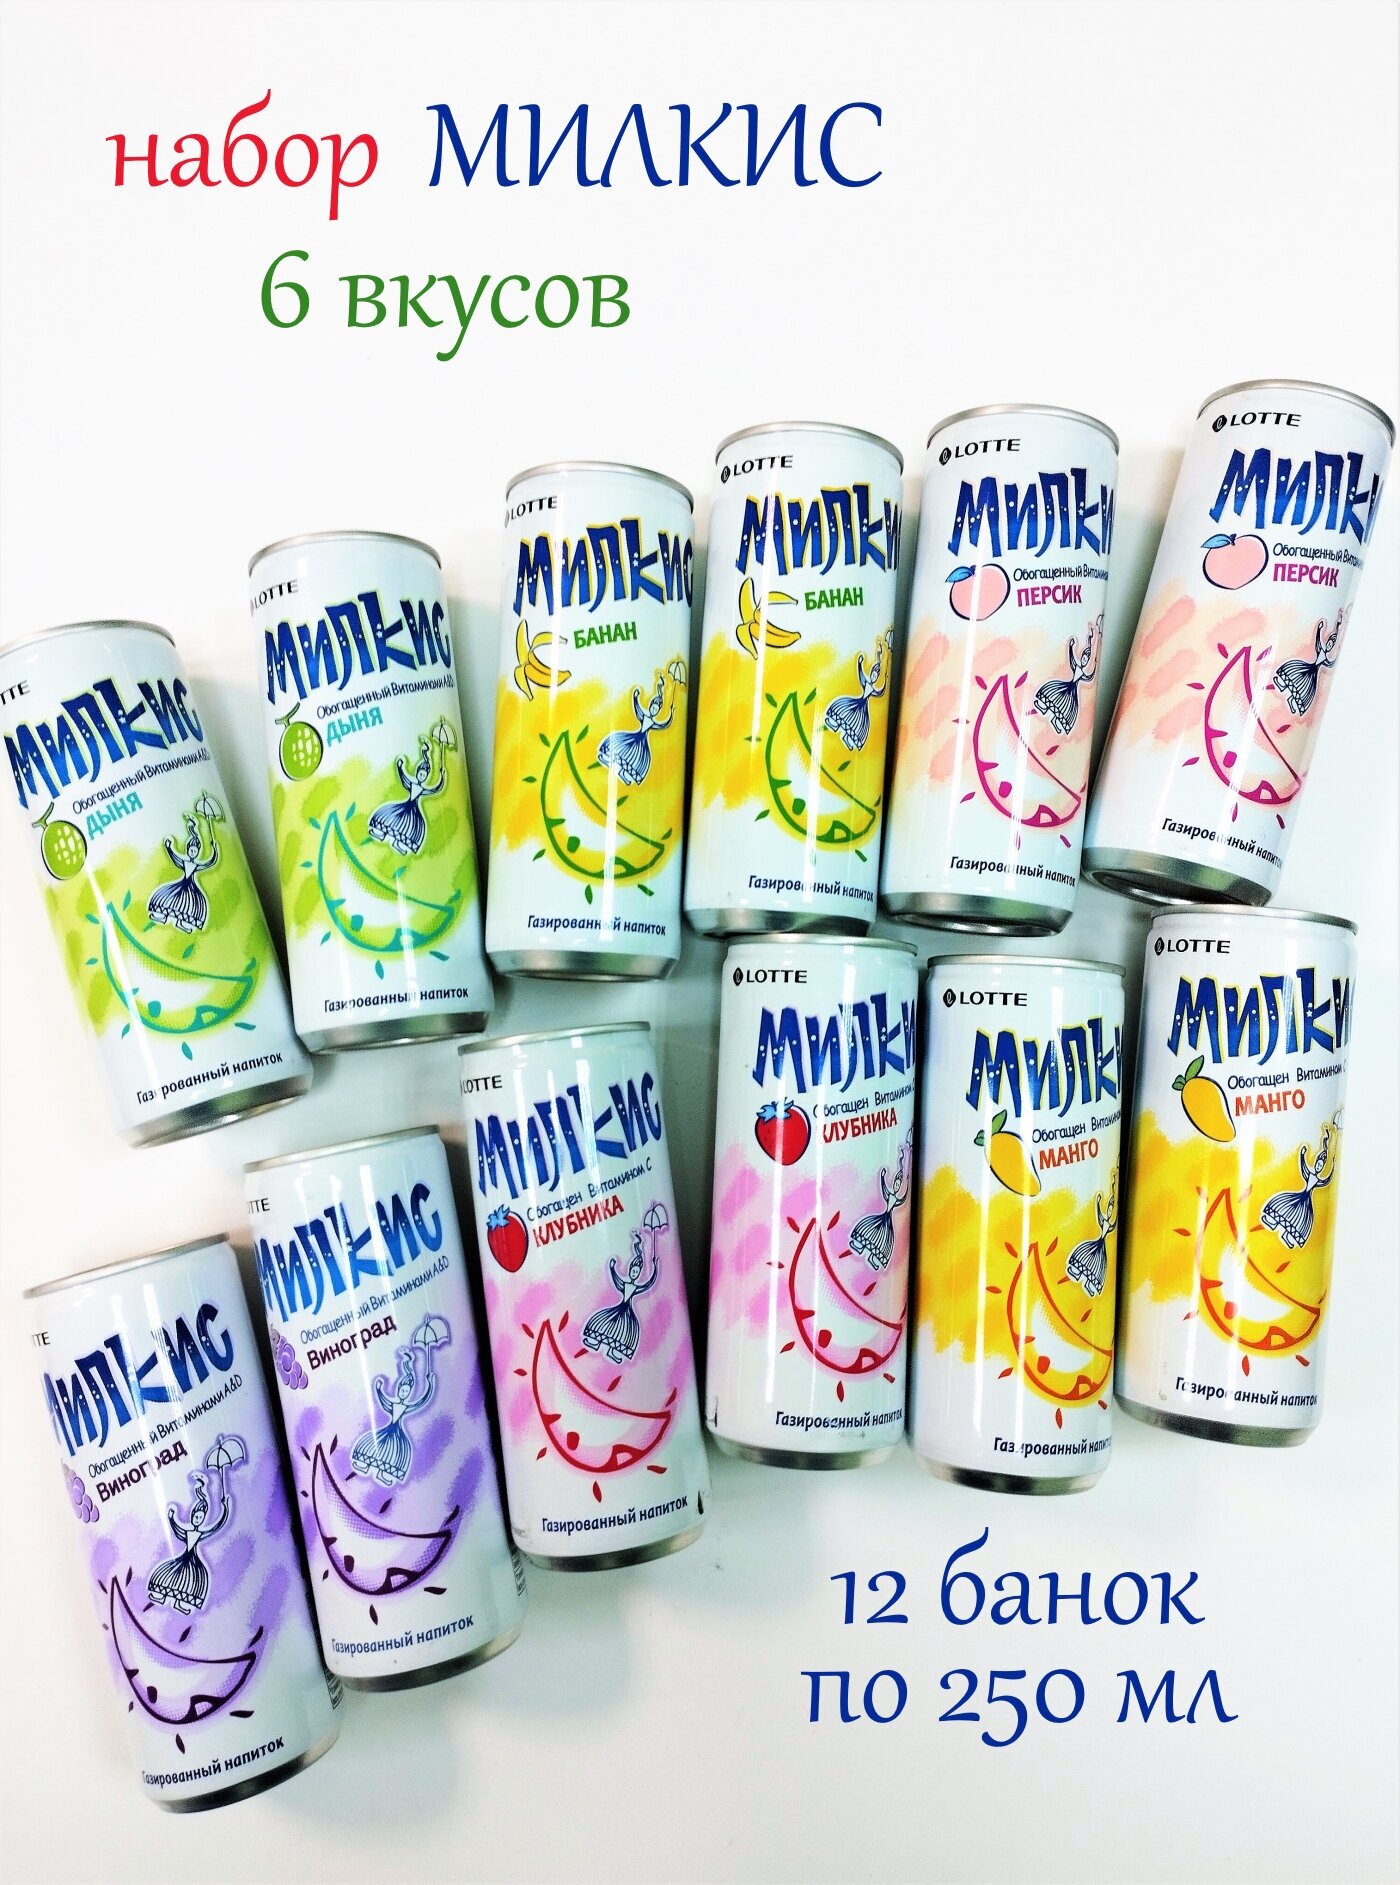 Набор Milkis (Милкис) с разными вкусами , 12 банок по 250 мл